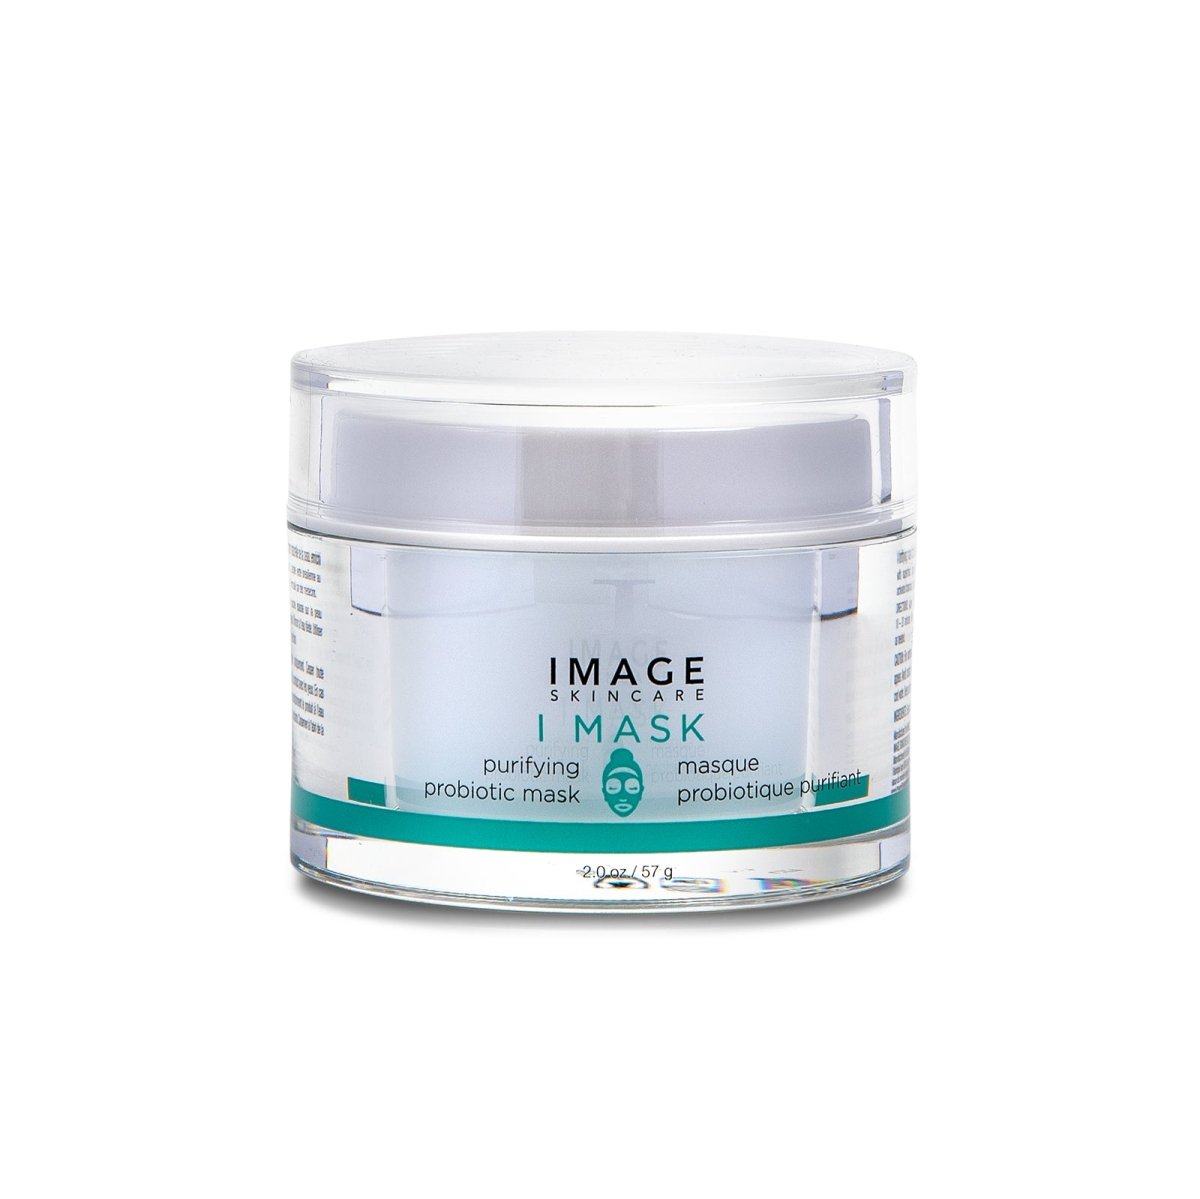 IMAGE Skincare I MASK Purifying Probiotic Mask - SkincareEssentials